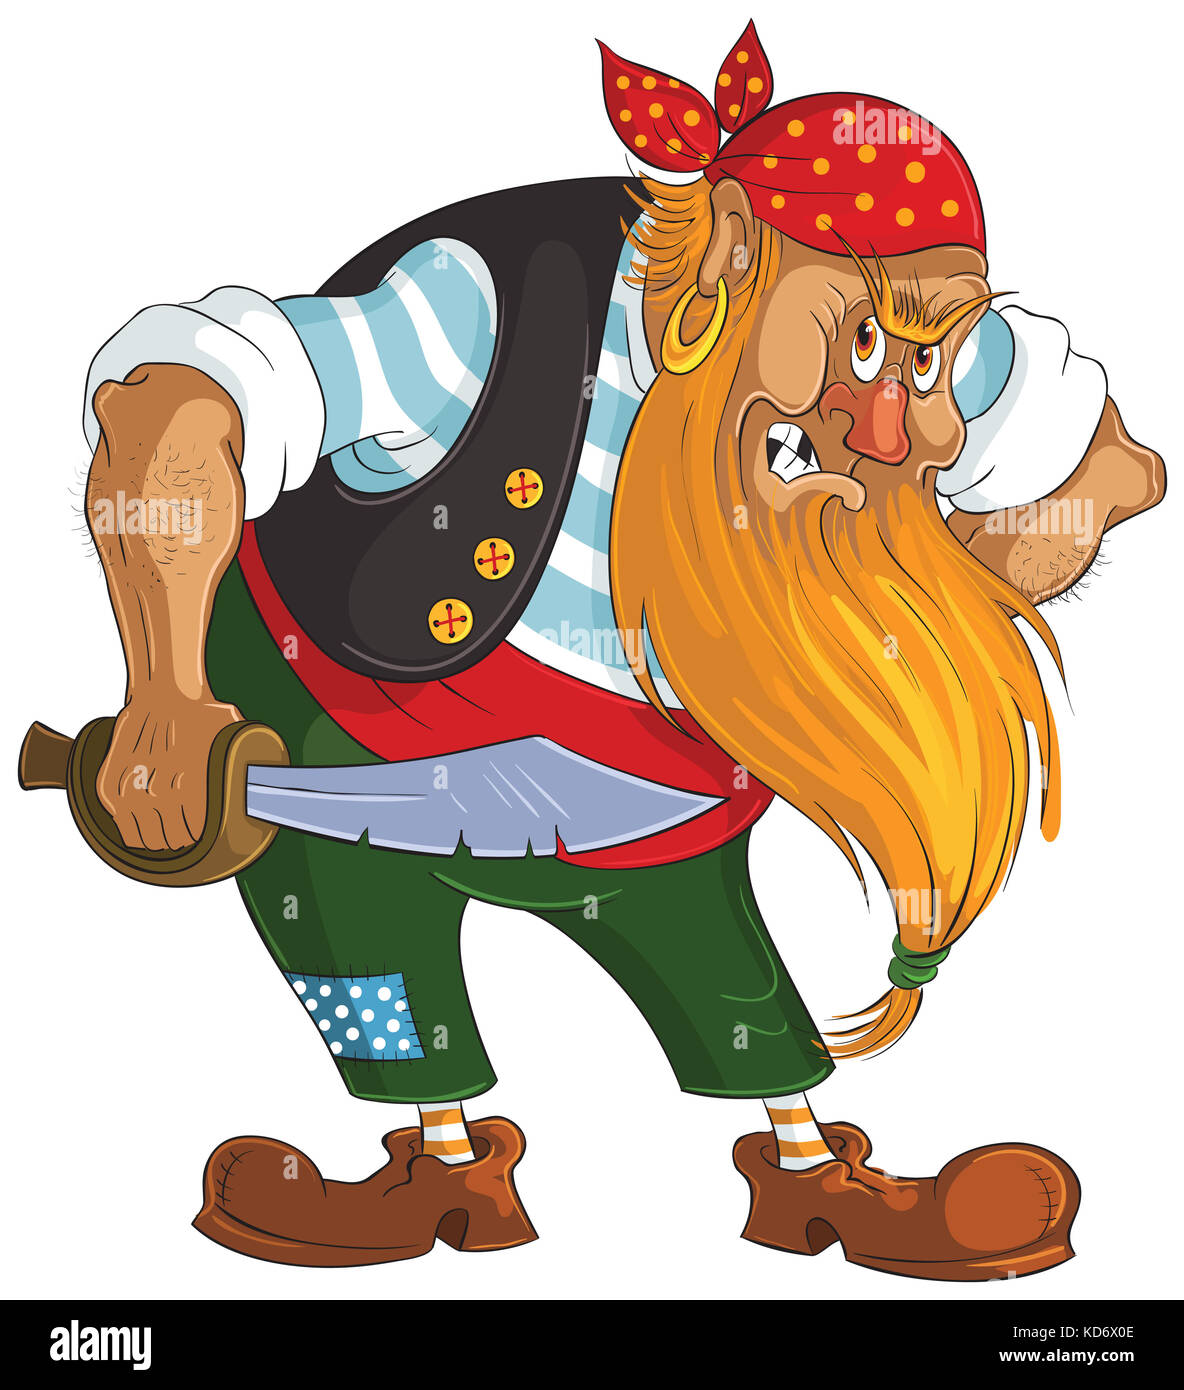 Abbildung: Cartoon angry Pirate auf weißem Hintergrund Stockfoto